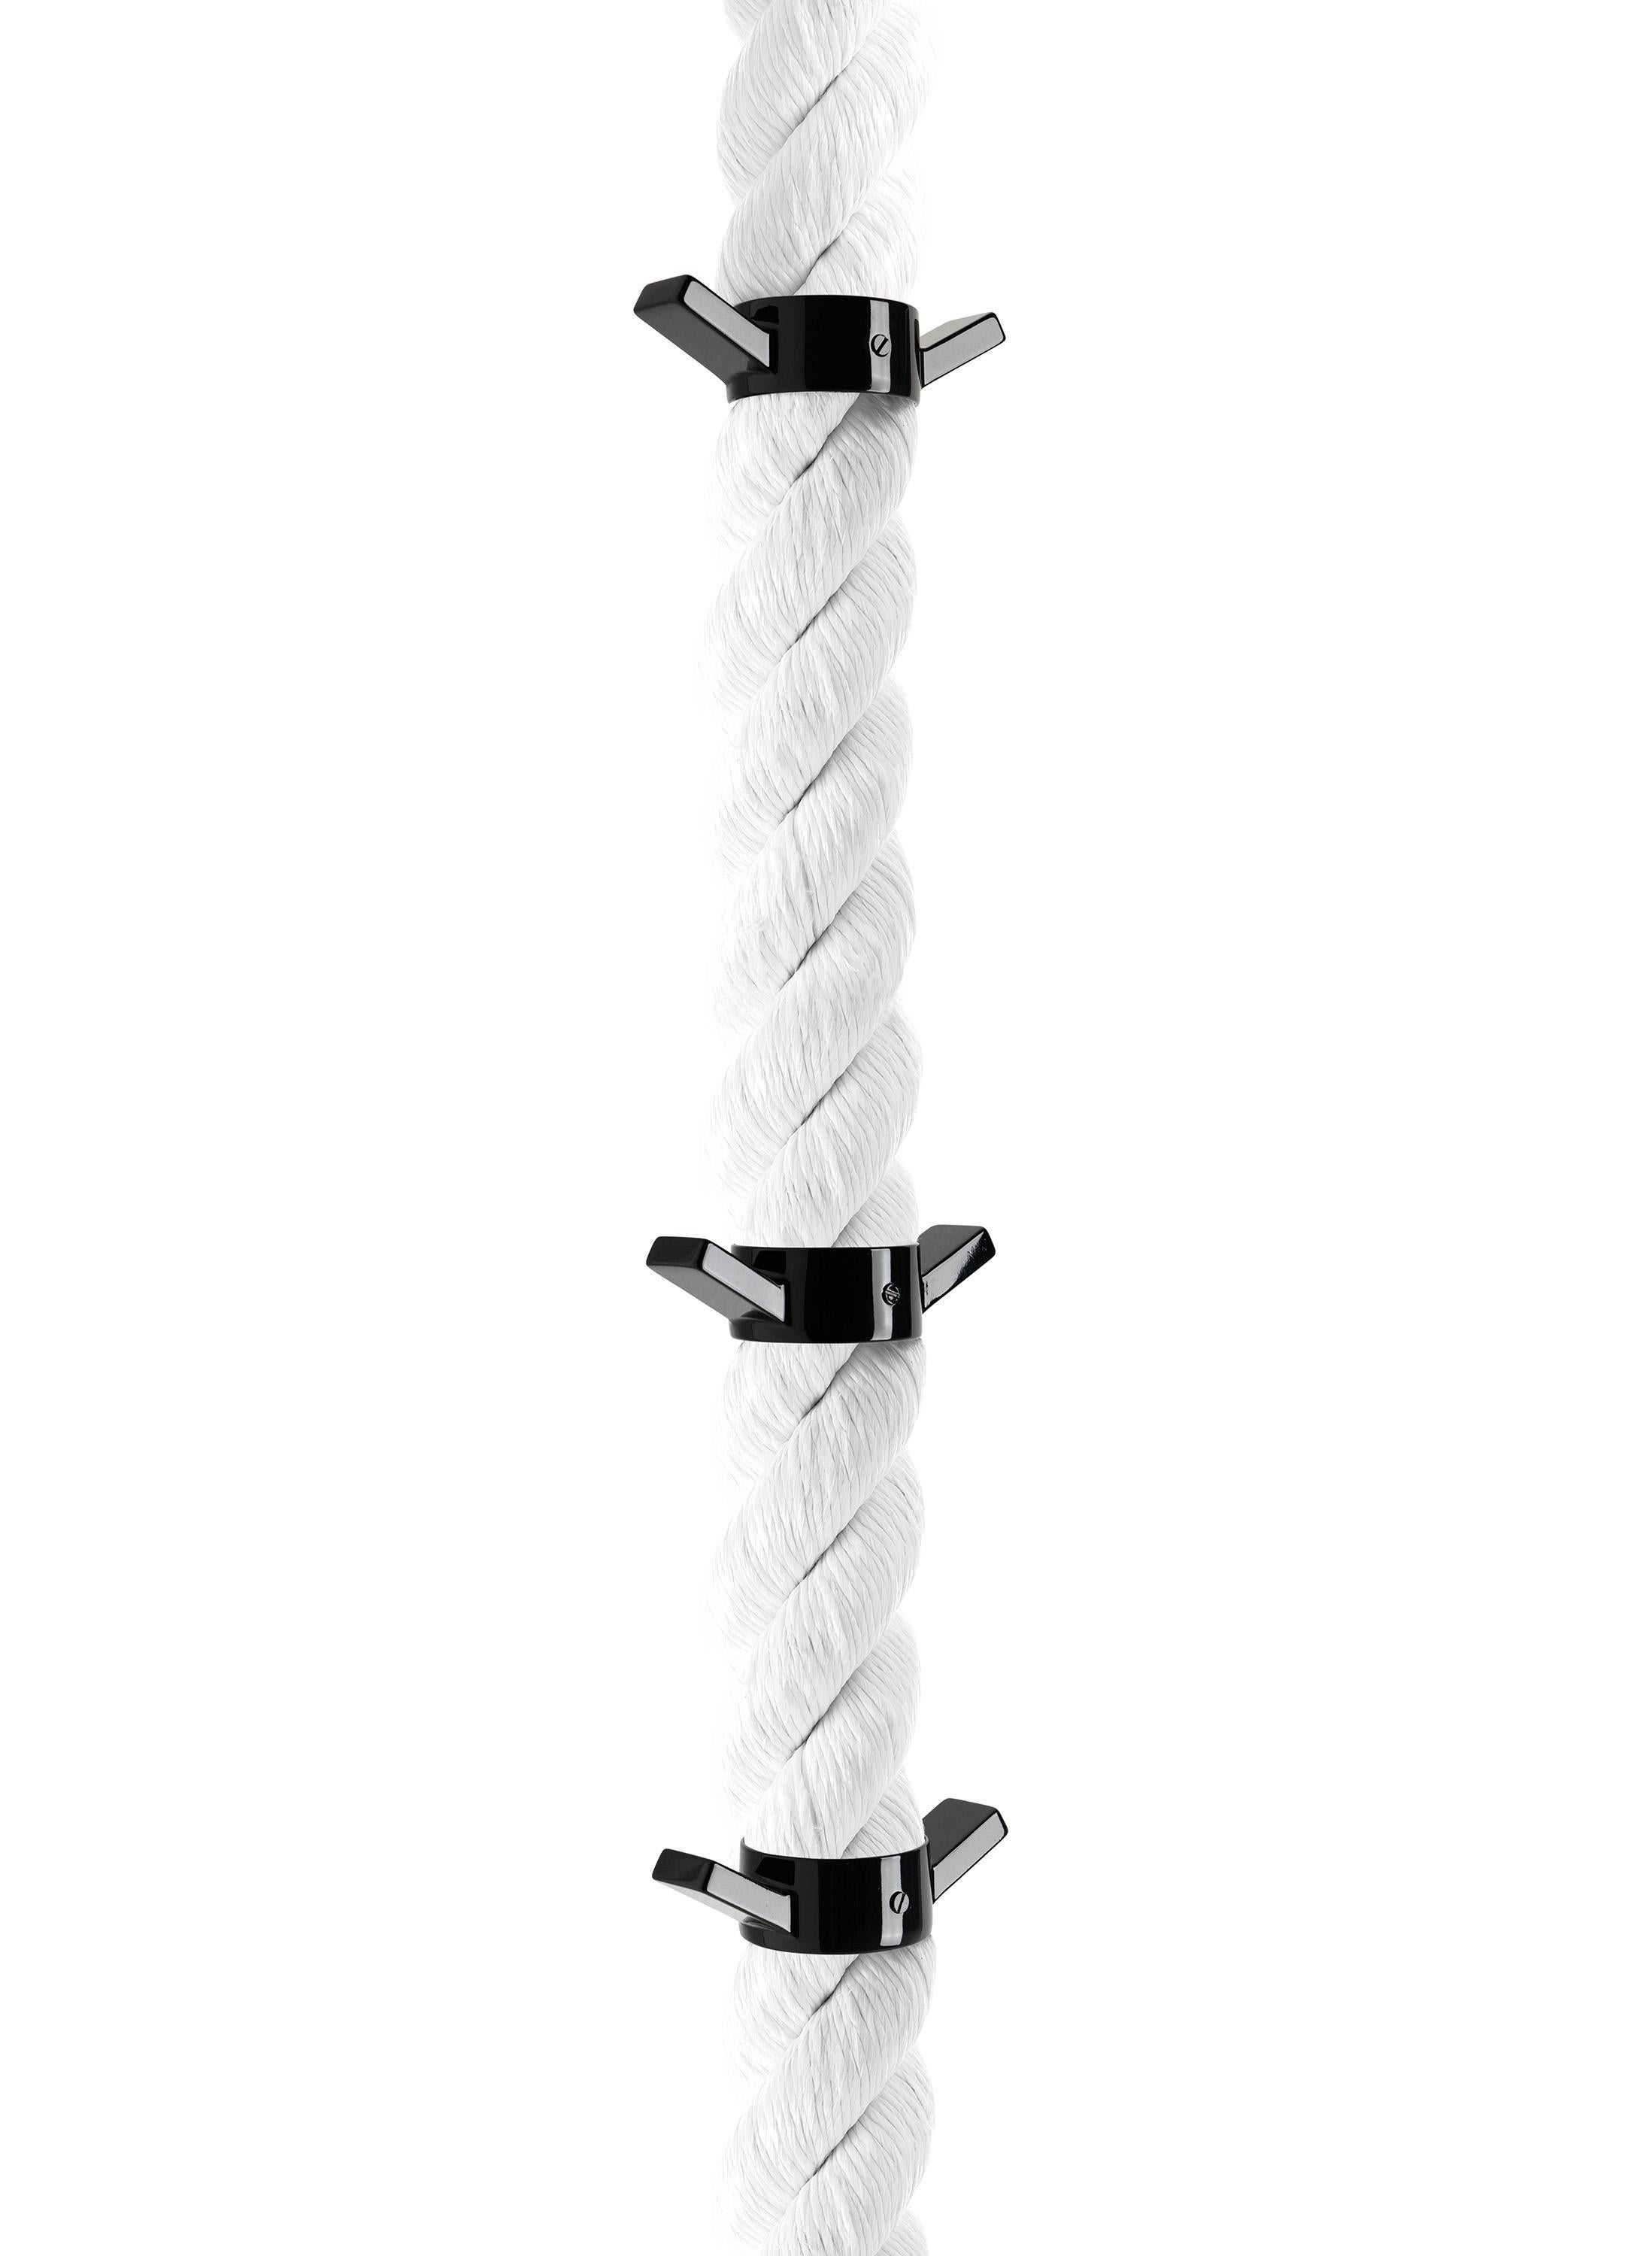 For Sale: White (White Rope with Black Nickel Hardware) Opinion Ciatti La Cima 3 Clothes Hanger